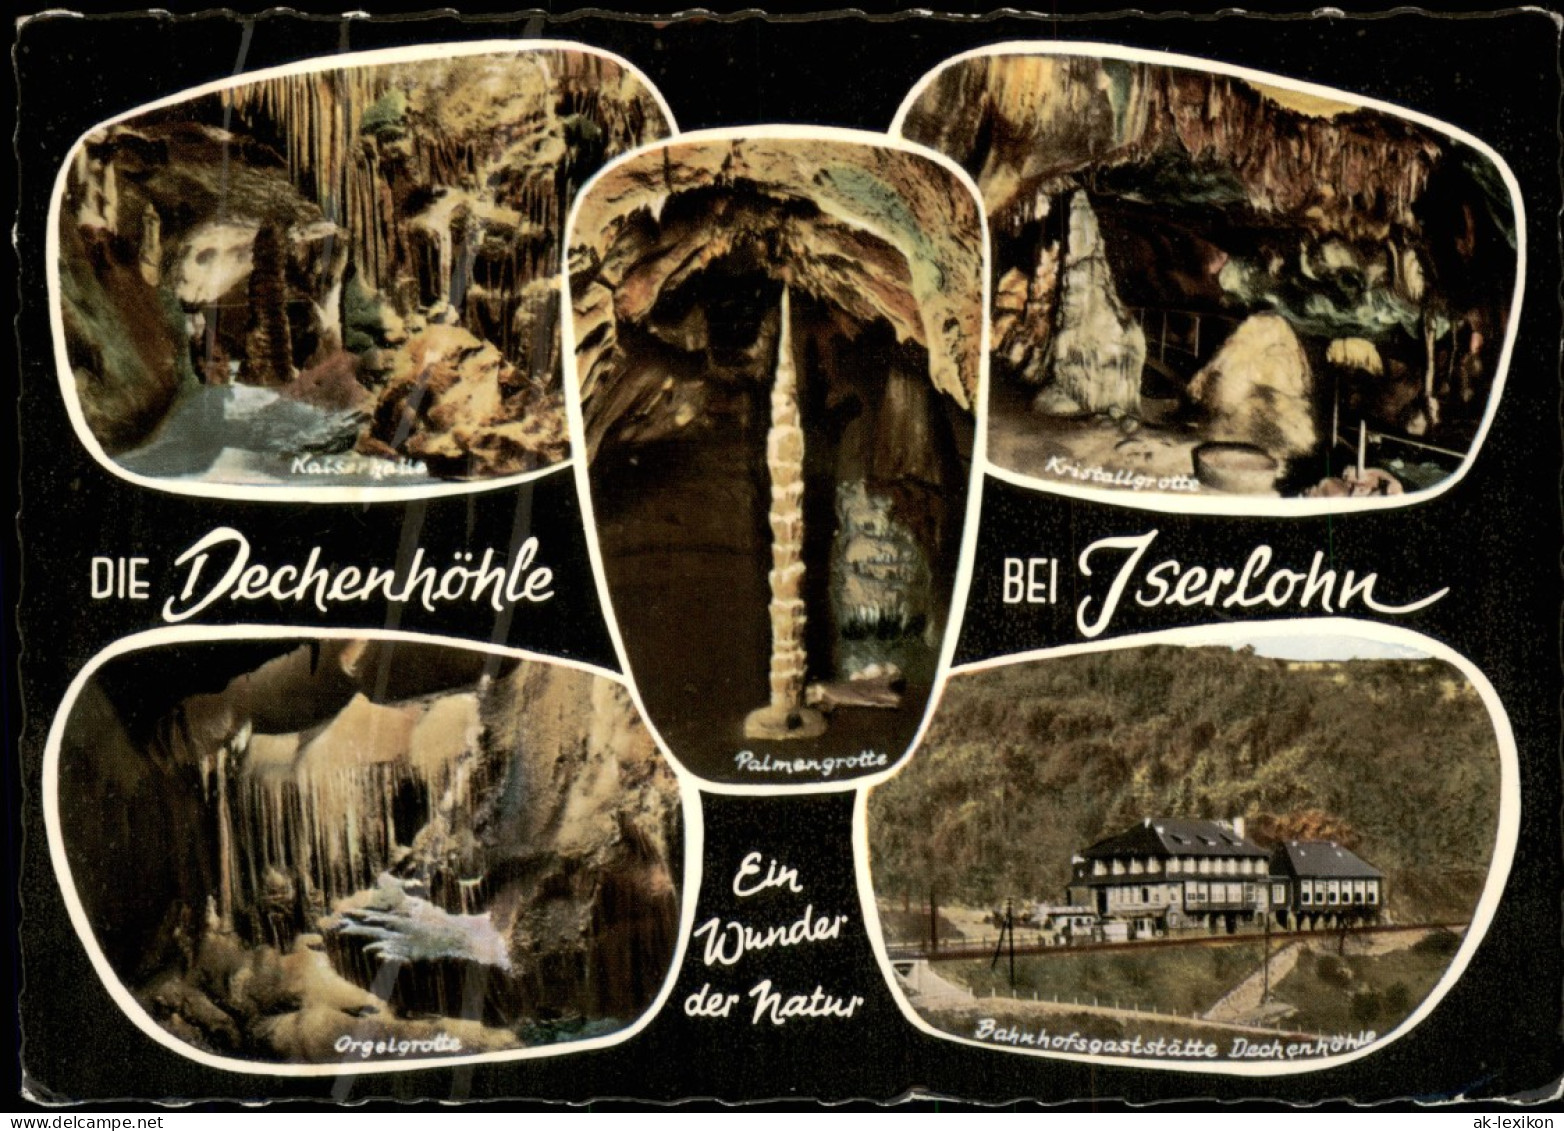 Grüne-Iserlohn Mehrbildkarte Dechenhöhle U. Bahnhofs-Gaststätte 1960 - Iserlohn